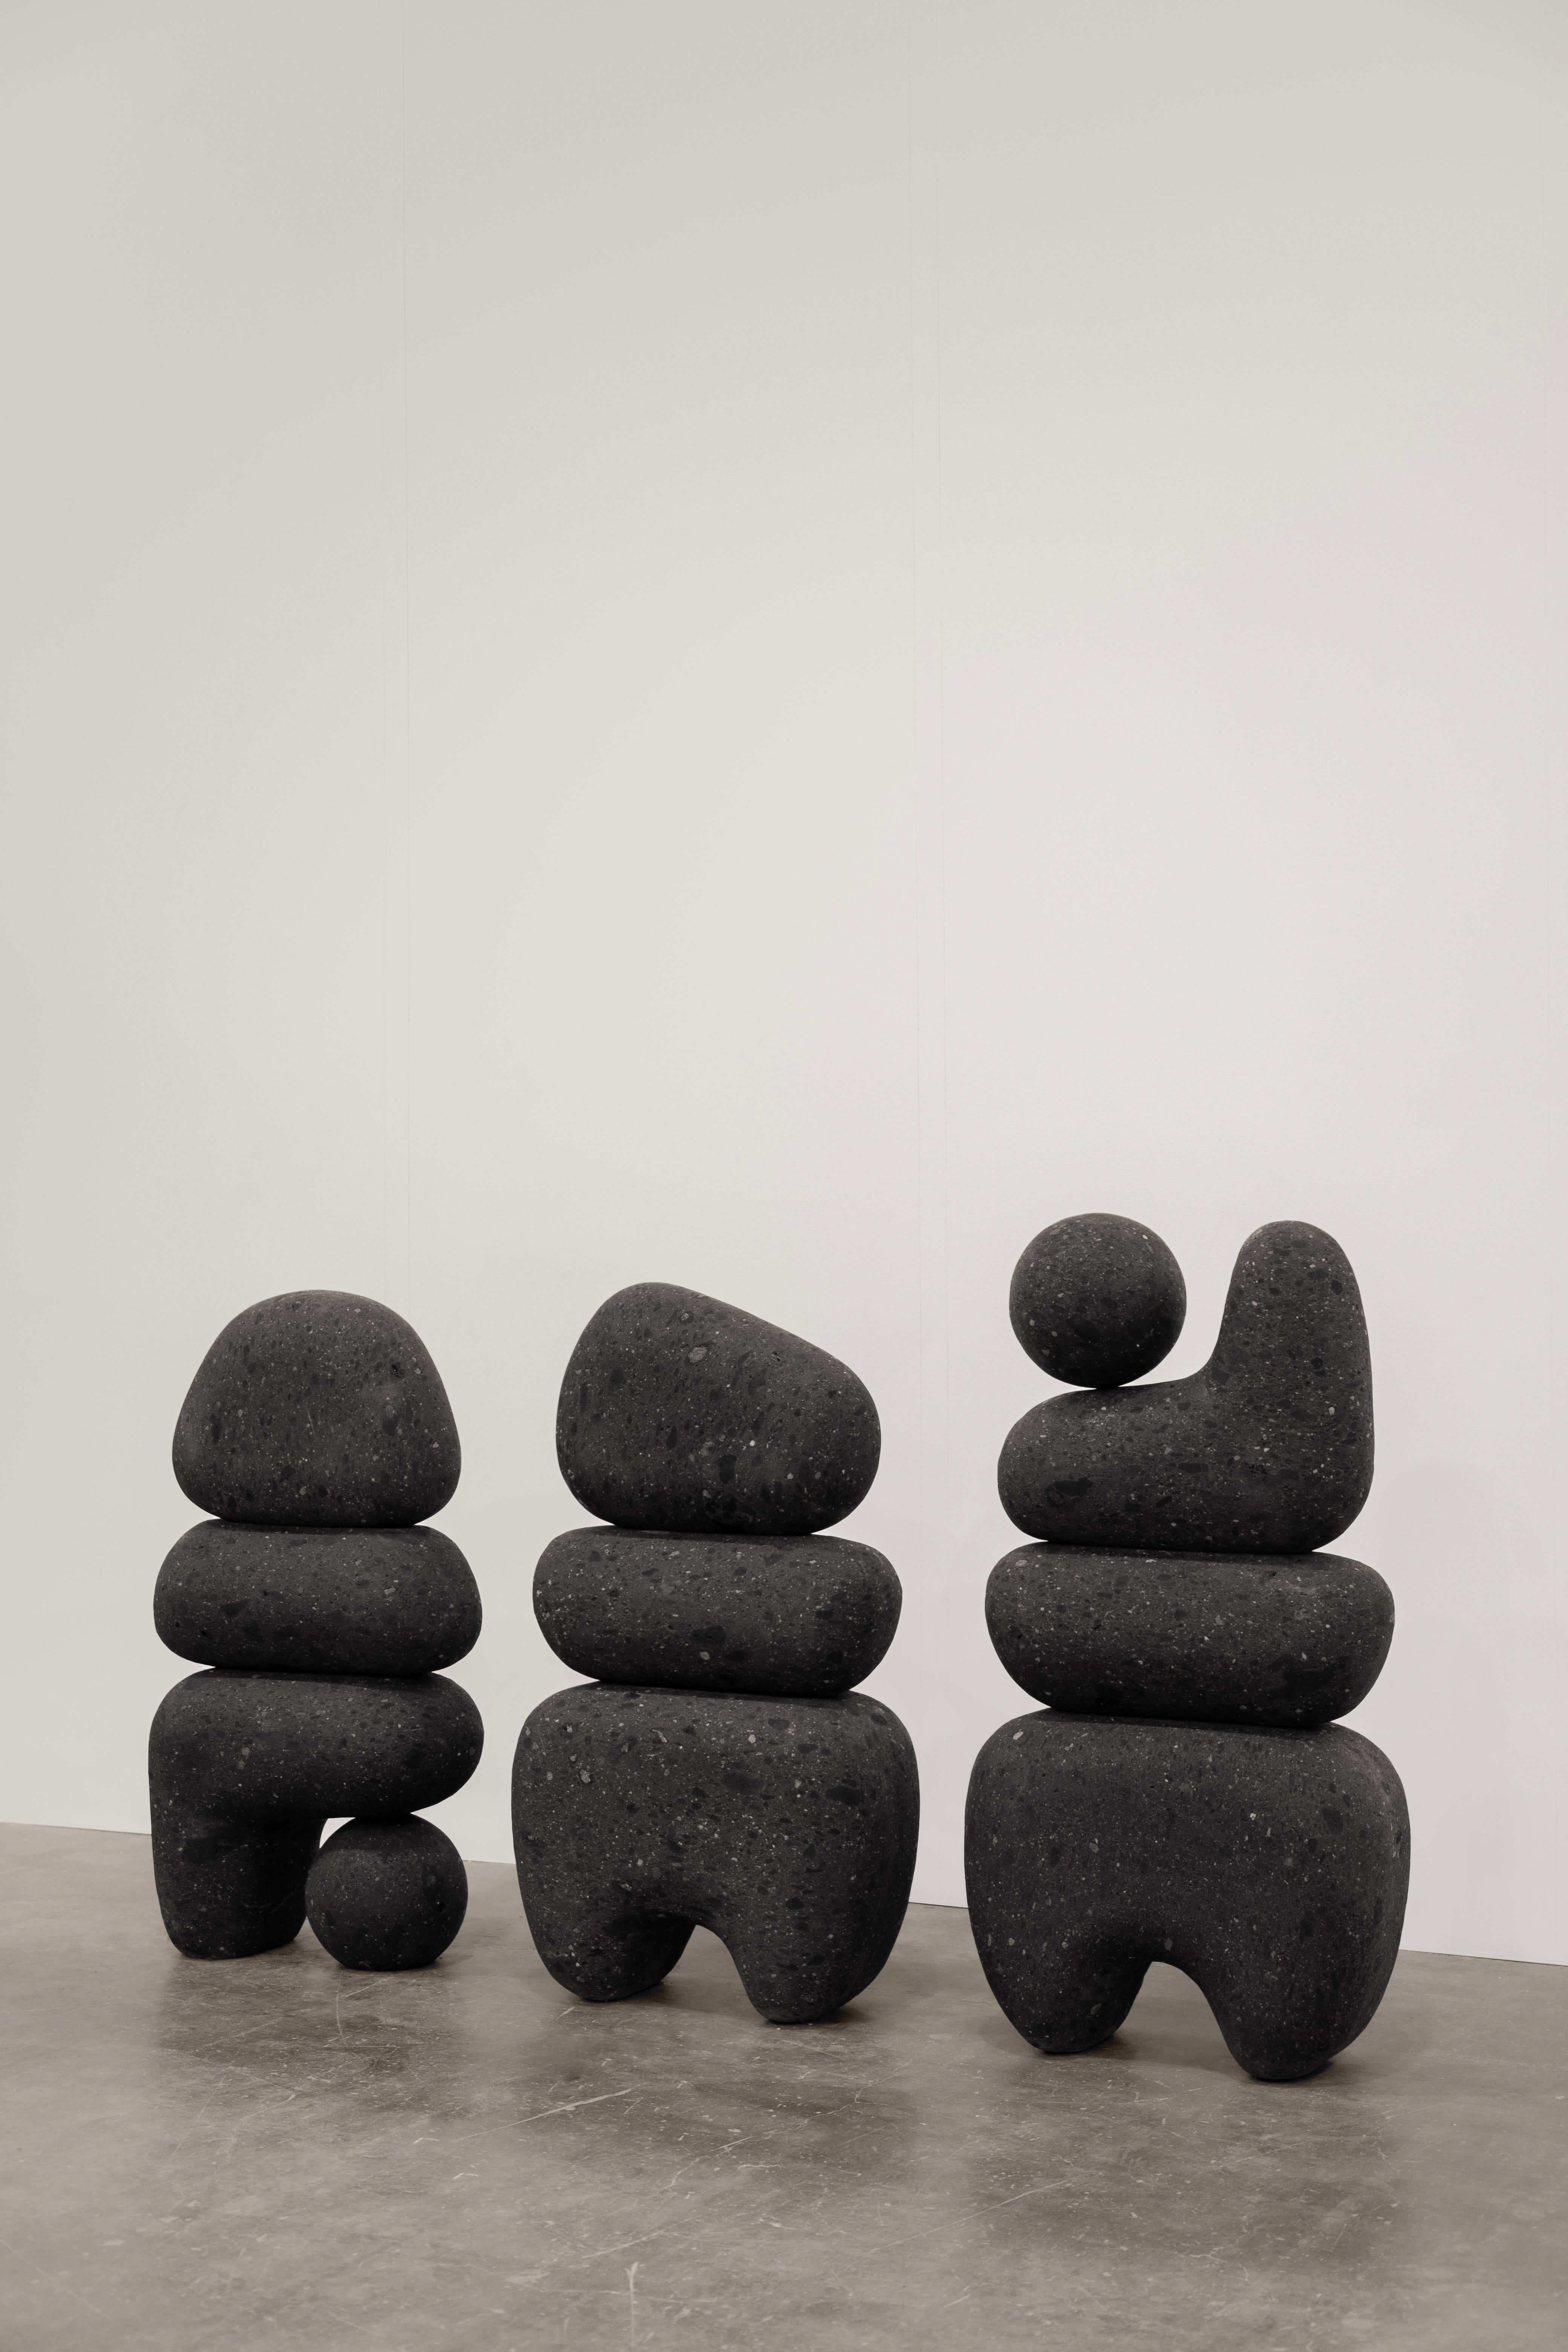 Rebeca Cors (México,1988). Le travail de CORS oscille entre la sculpture et la fonction, étudiant ses limites et ses points de rencontre. En conséquence, CORS crée des sculptures abstraites -et des sculptures utilitaires.

Les compositions